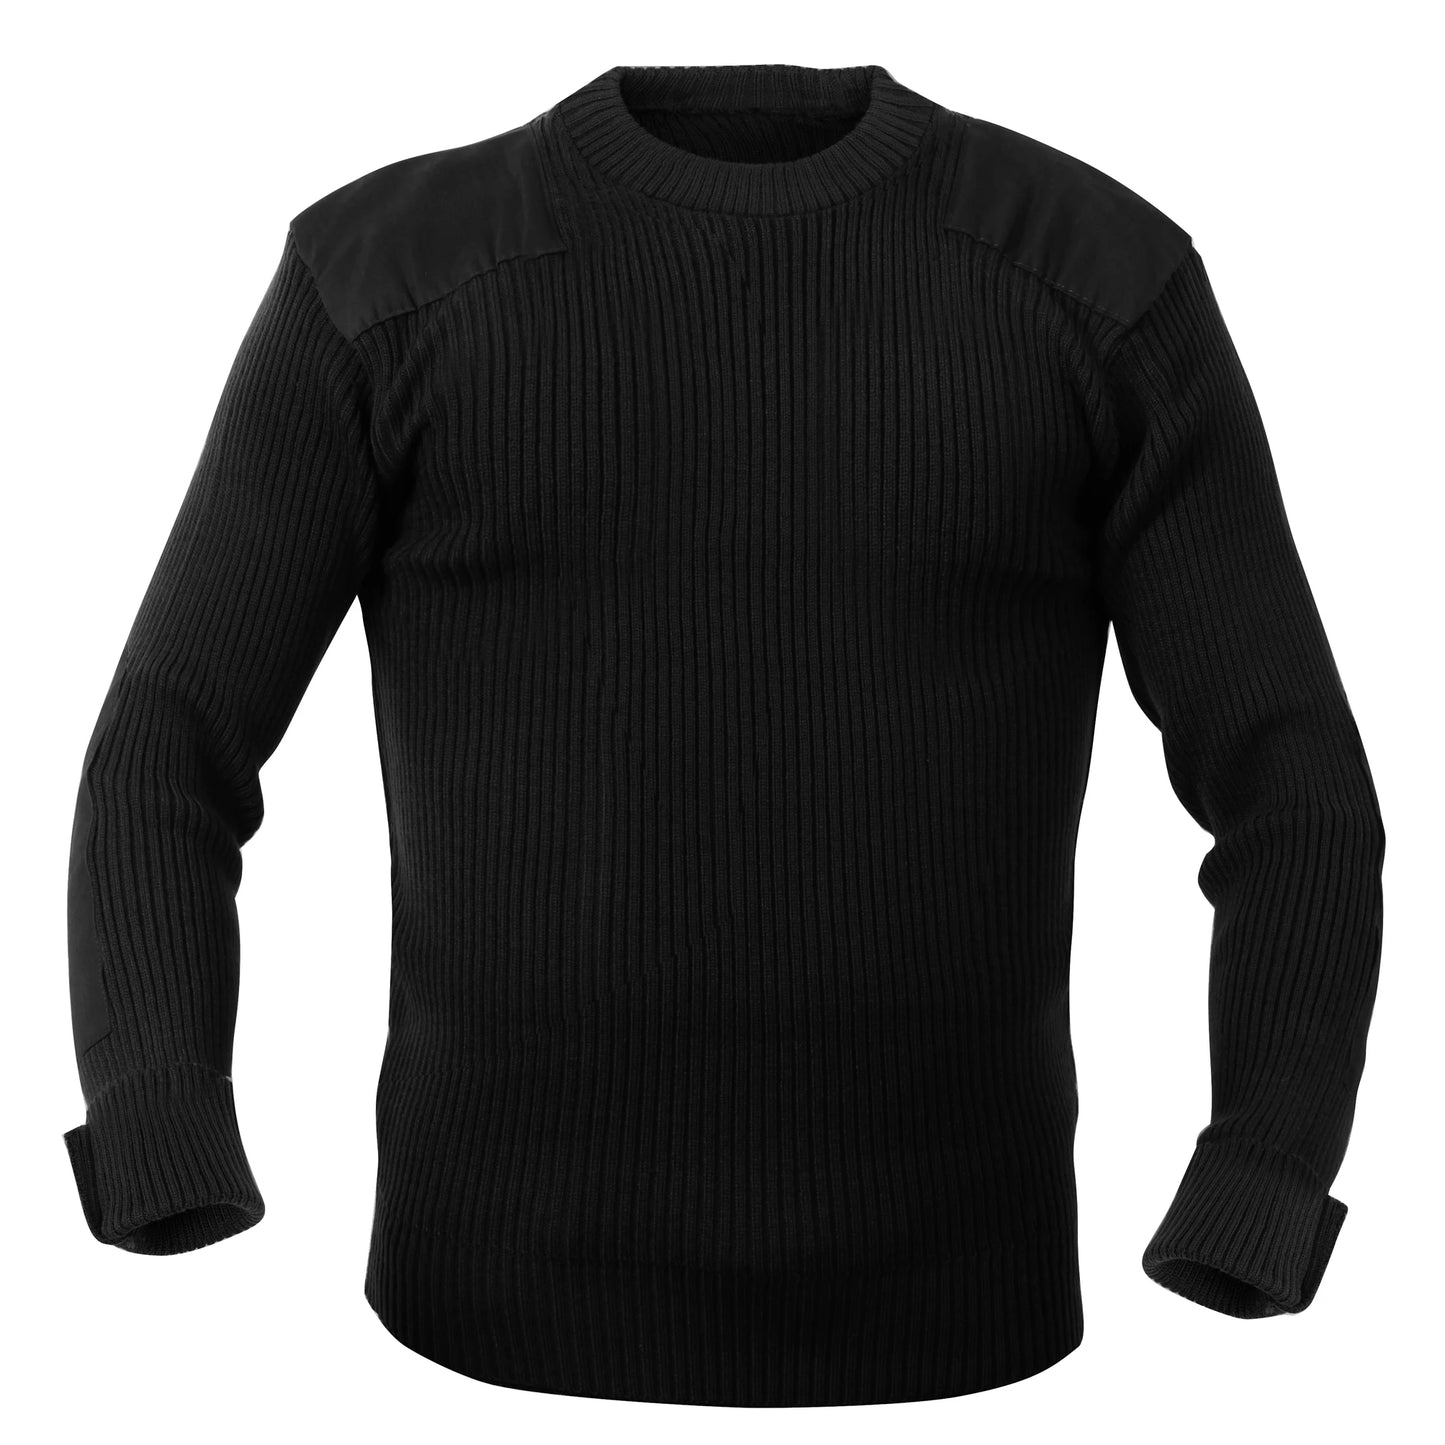 Commando Sweater Acrylic – Army Navy Marine Store